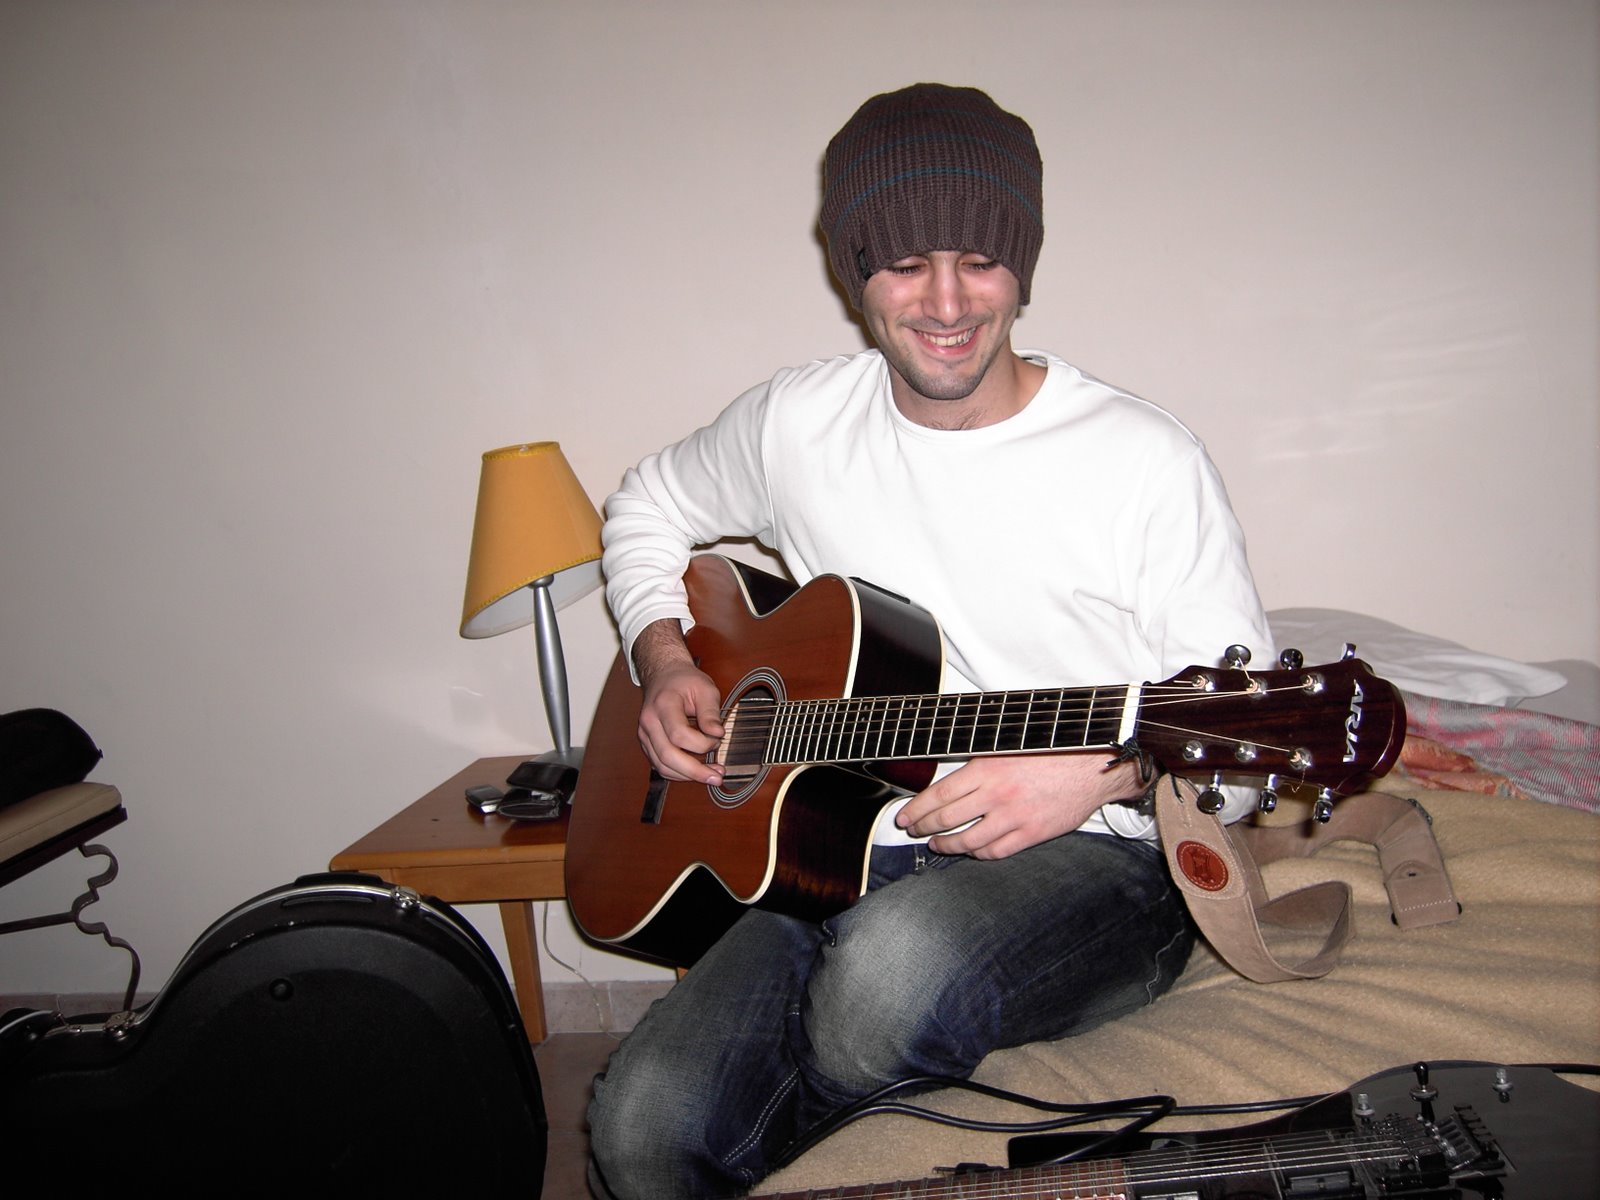 [Matt+smiling+playing+guitare.JPG]